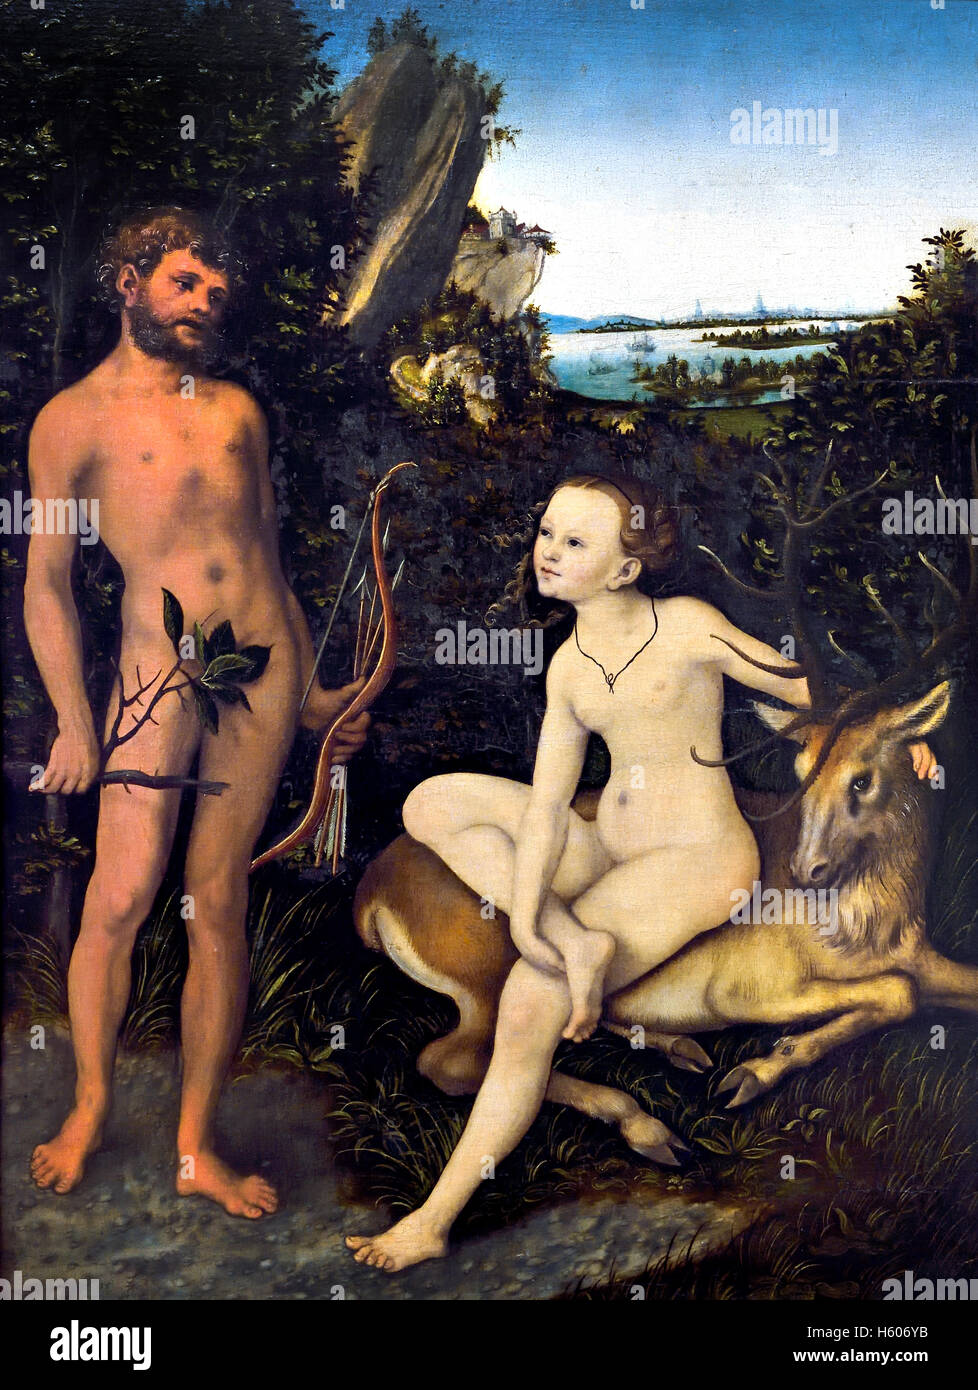 Apolo y Diana en el paisaje boscoso 1530 Lucas Cranach 1472 - 1553 ALEMÁN Alemania ( Apolo, dios de la música - Diana Diosa de la caza es una historia de la antigua mitología griega ) Foto de stock